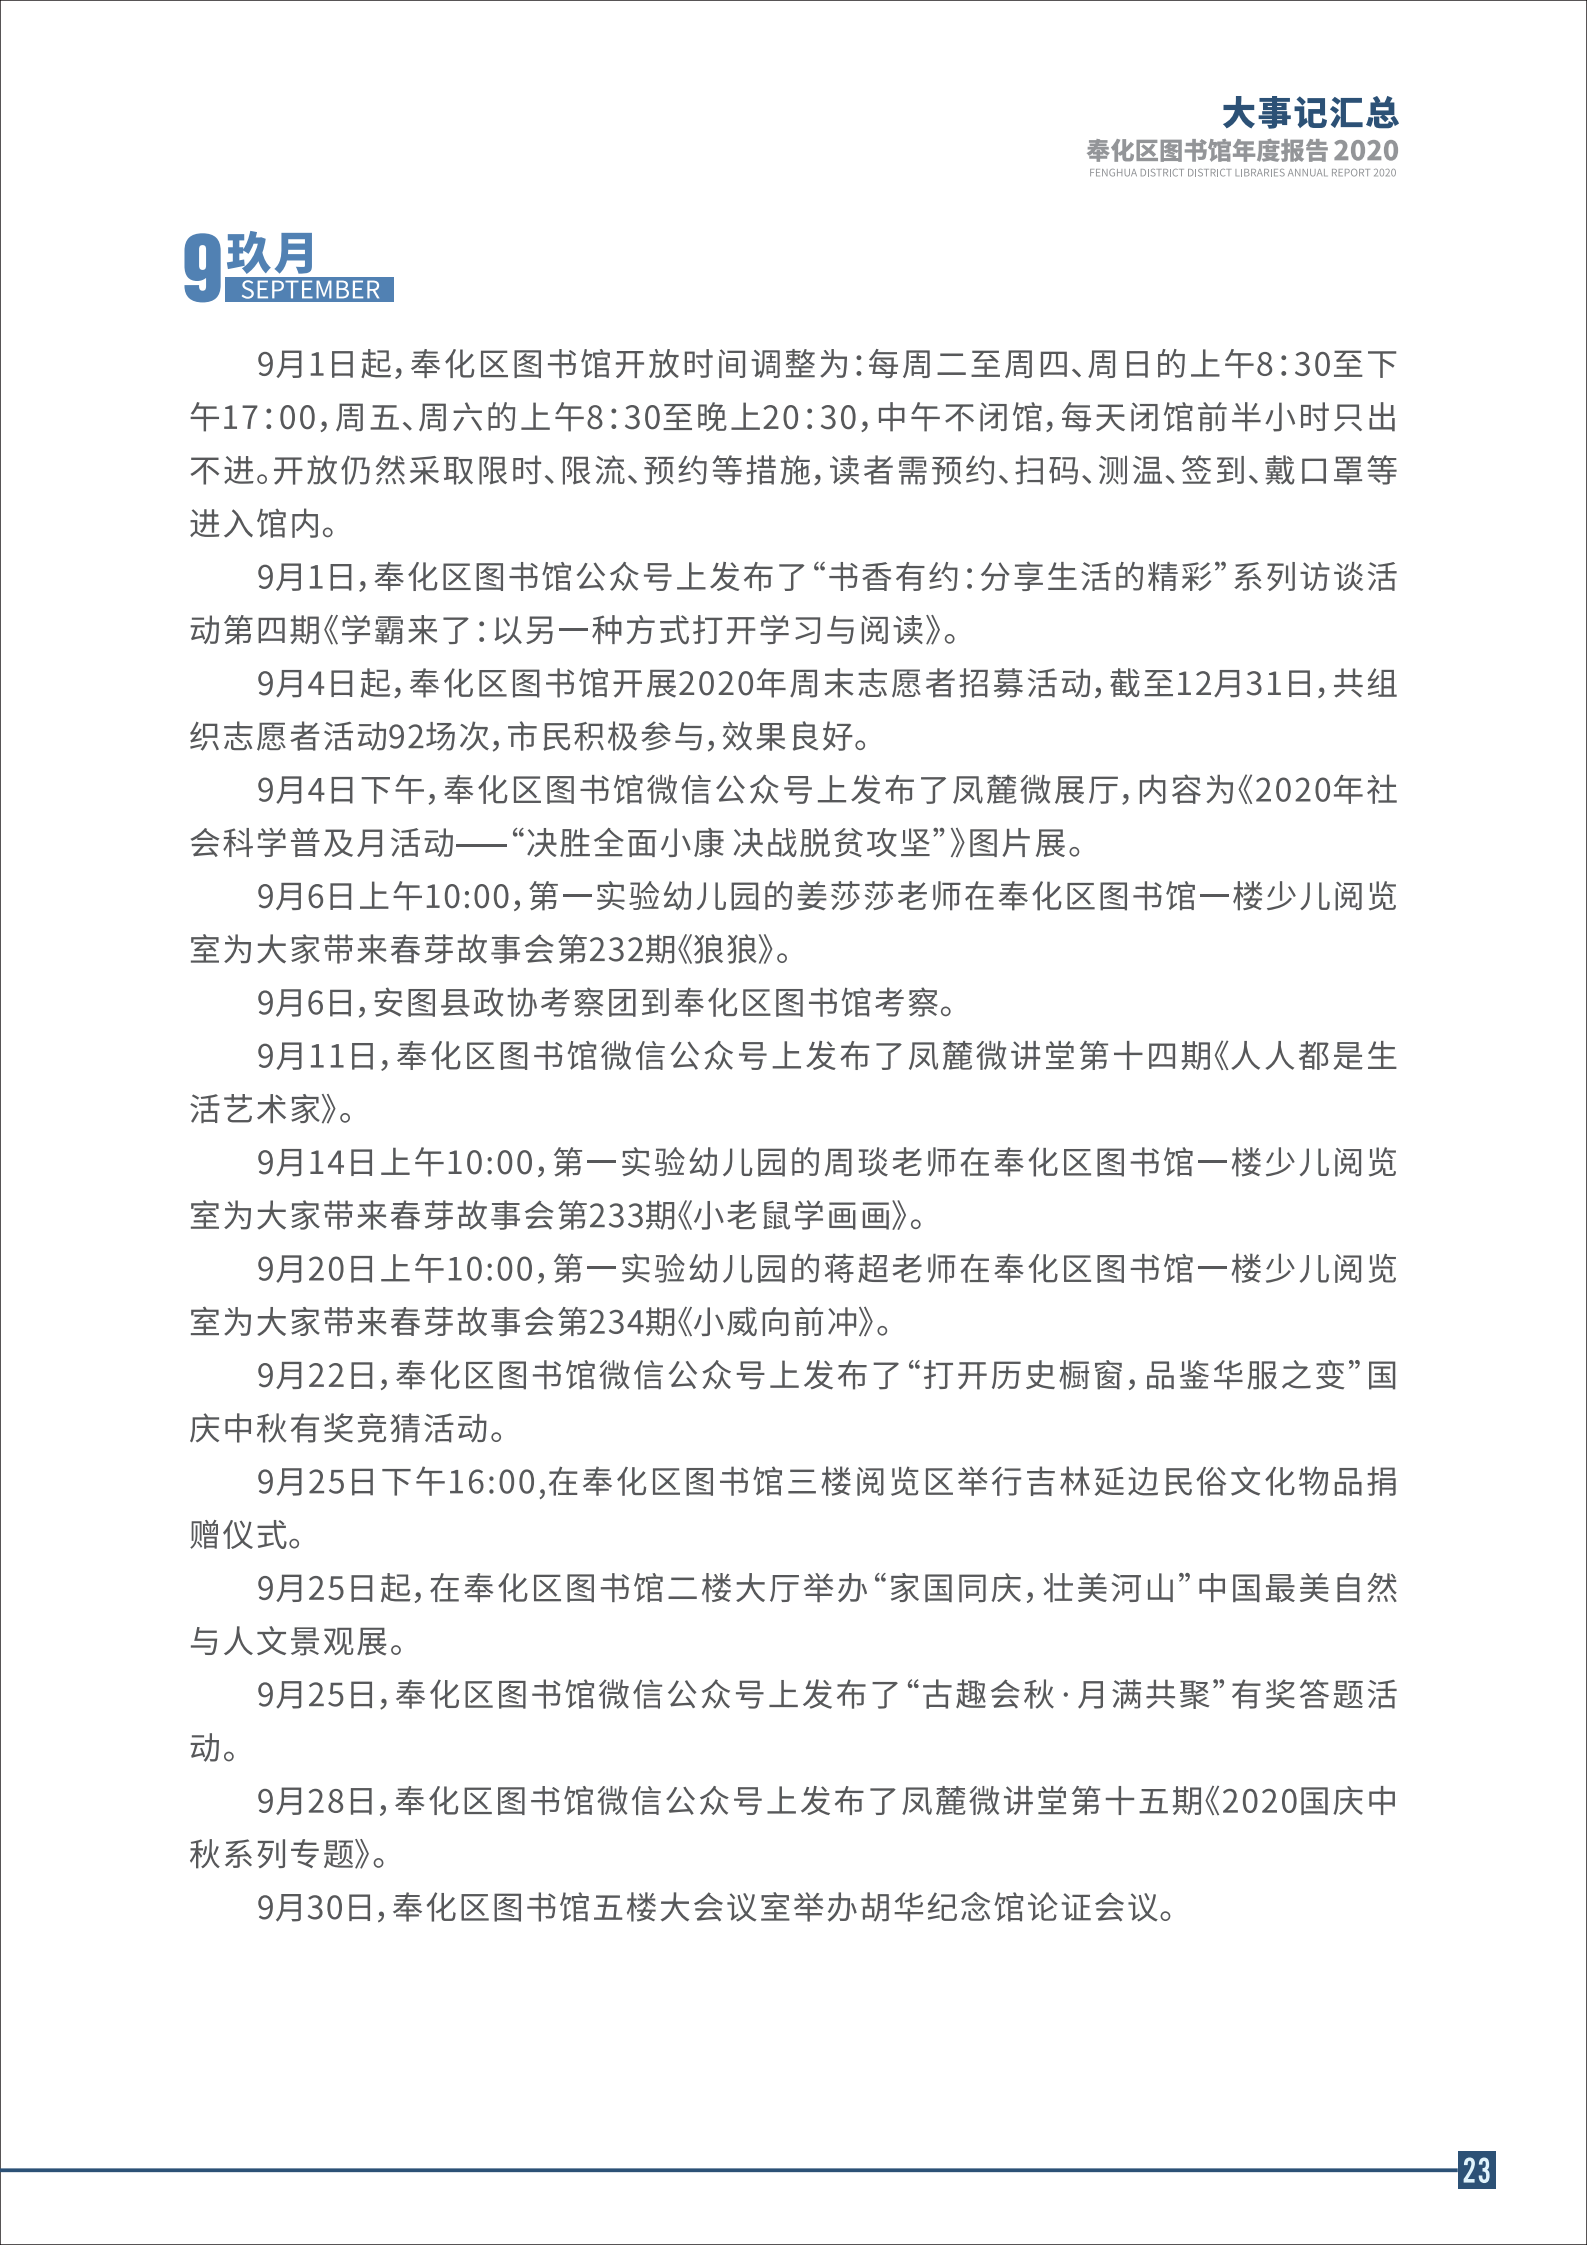 宁波市奉化区图书馆2020年年度报告 终稿_23.png